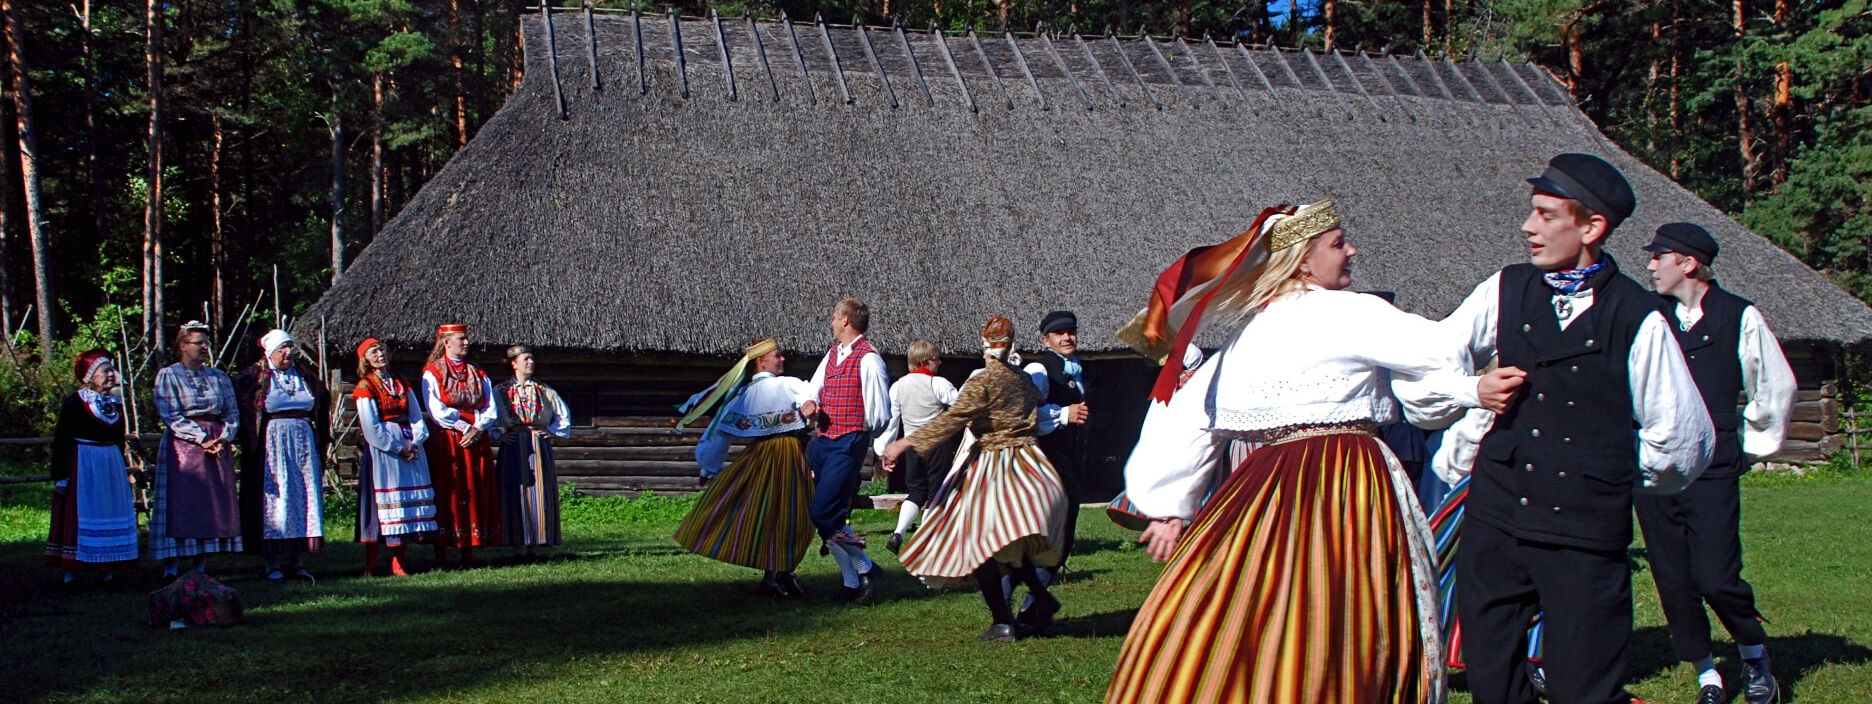 Música y bailes folclóricos de Estonia